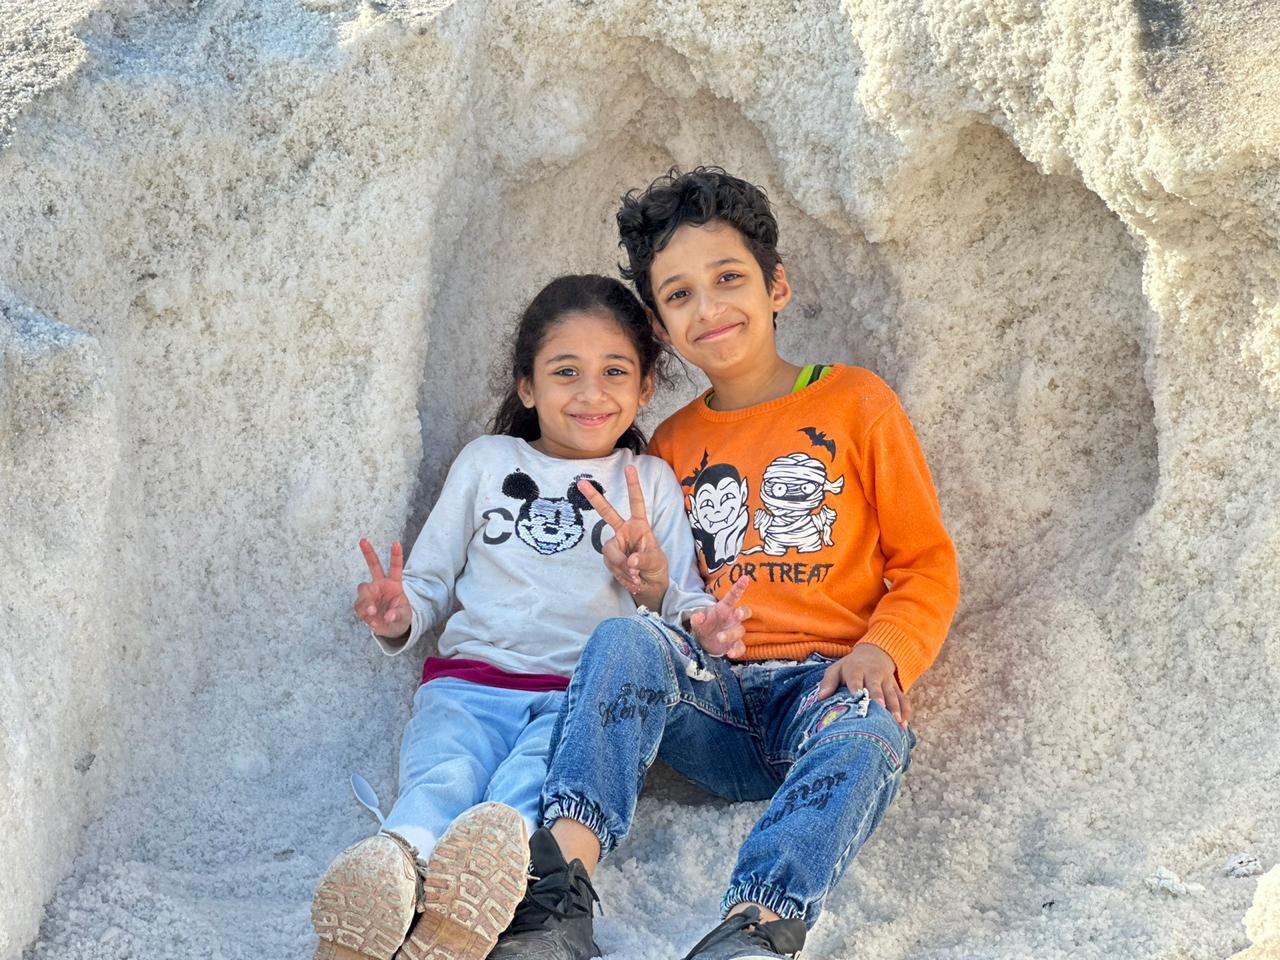 علامة النصر مع الأطفال في جبال الملح  بورسعيد